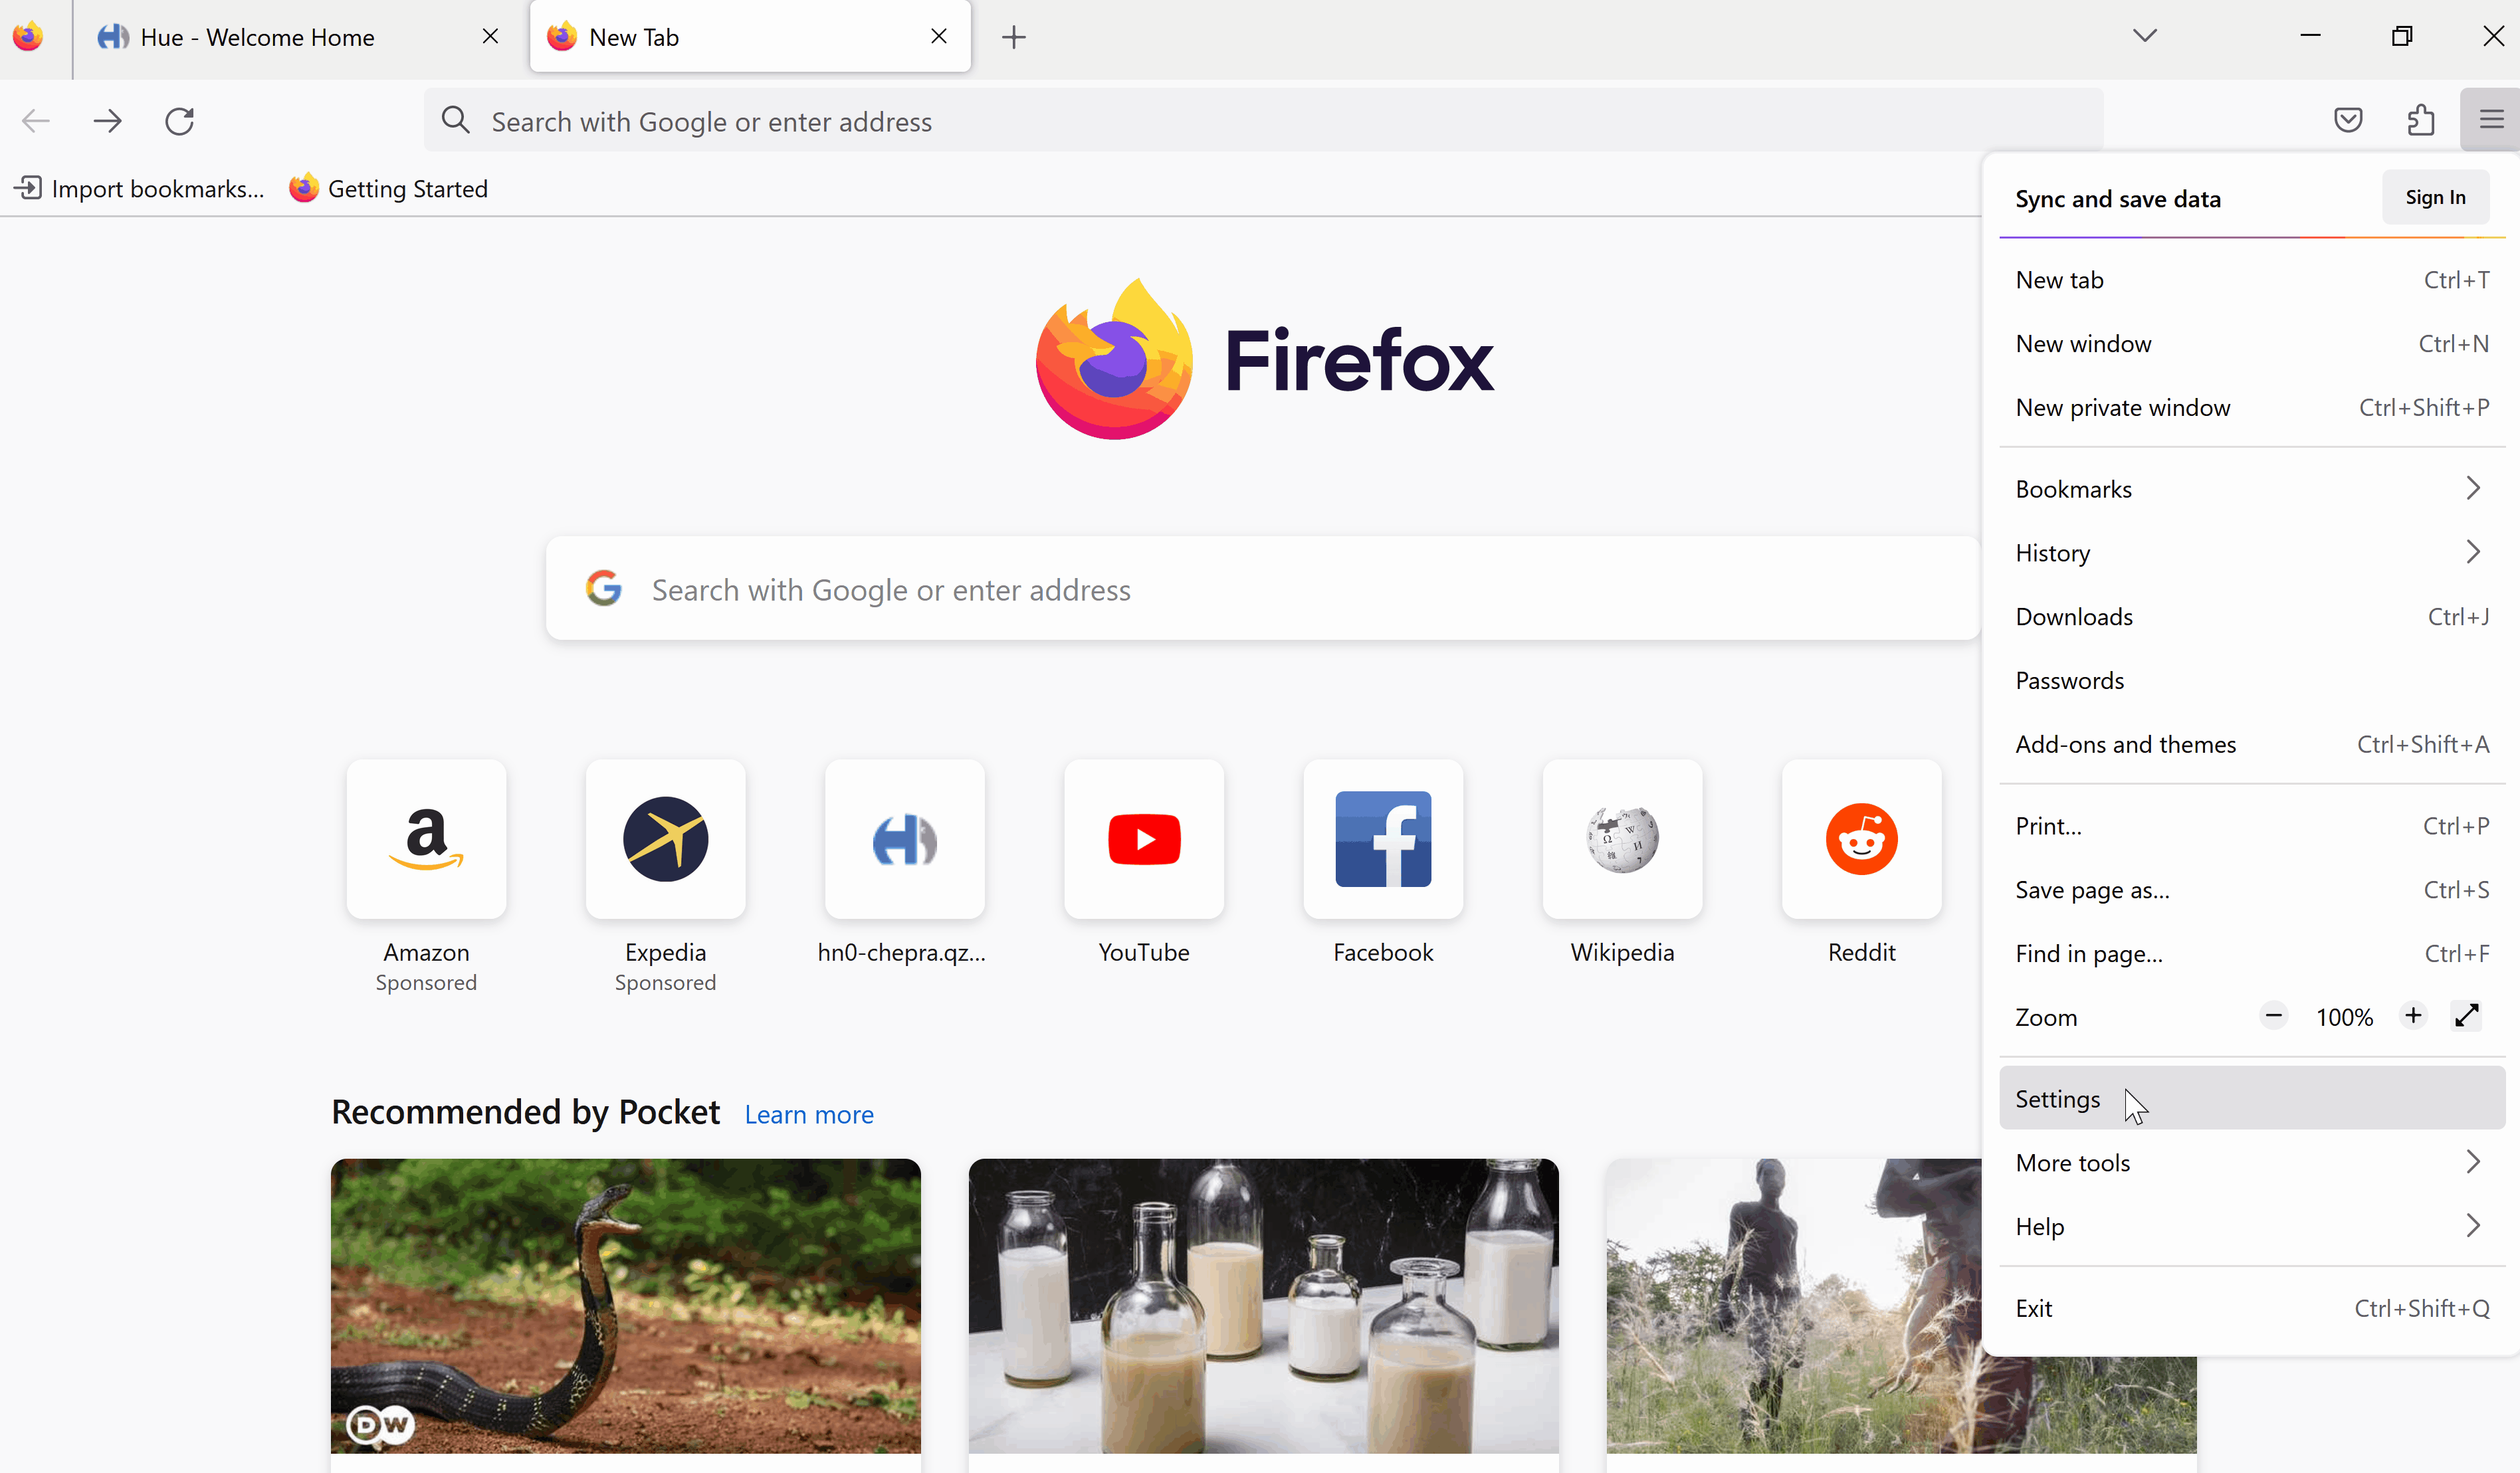 HDI-FirefoxOne